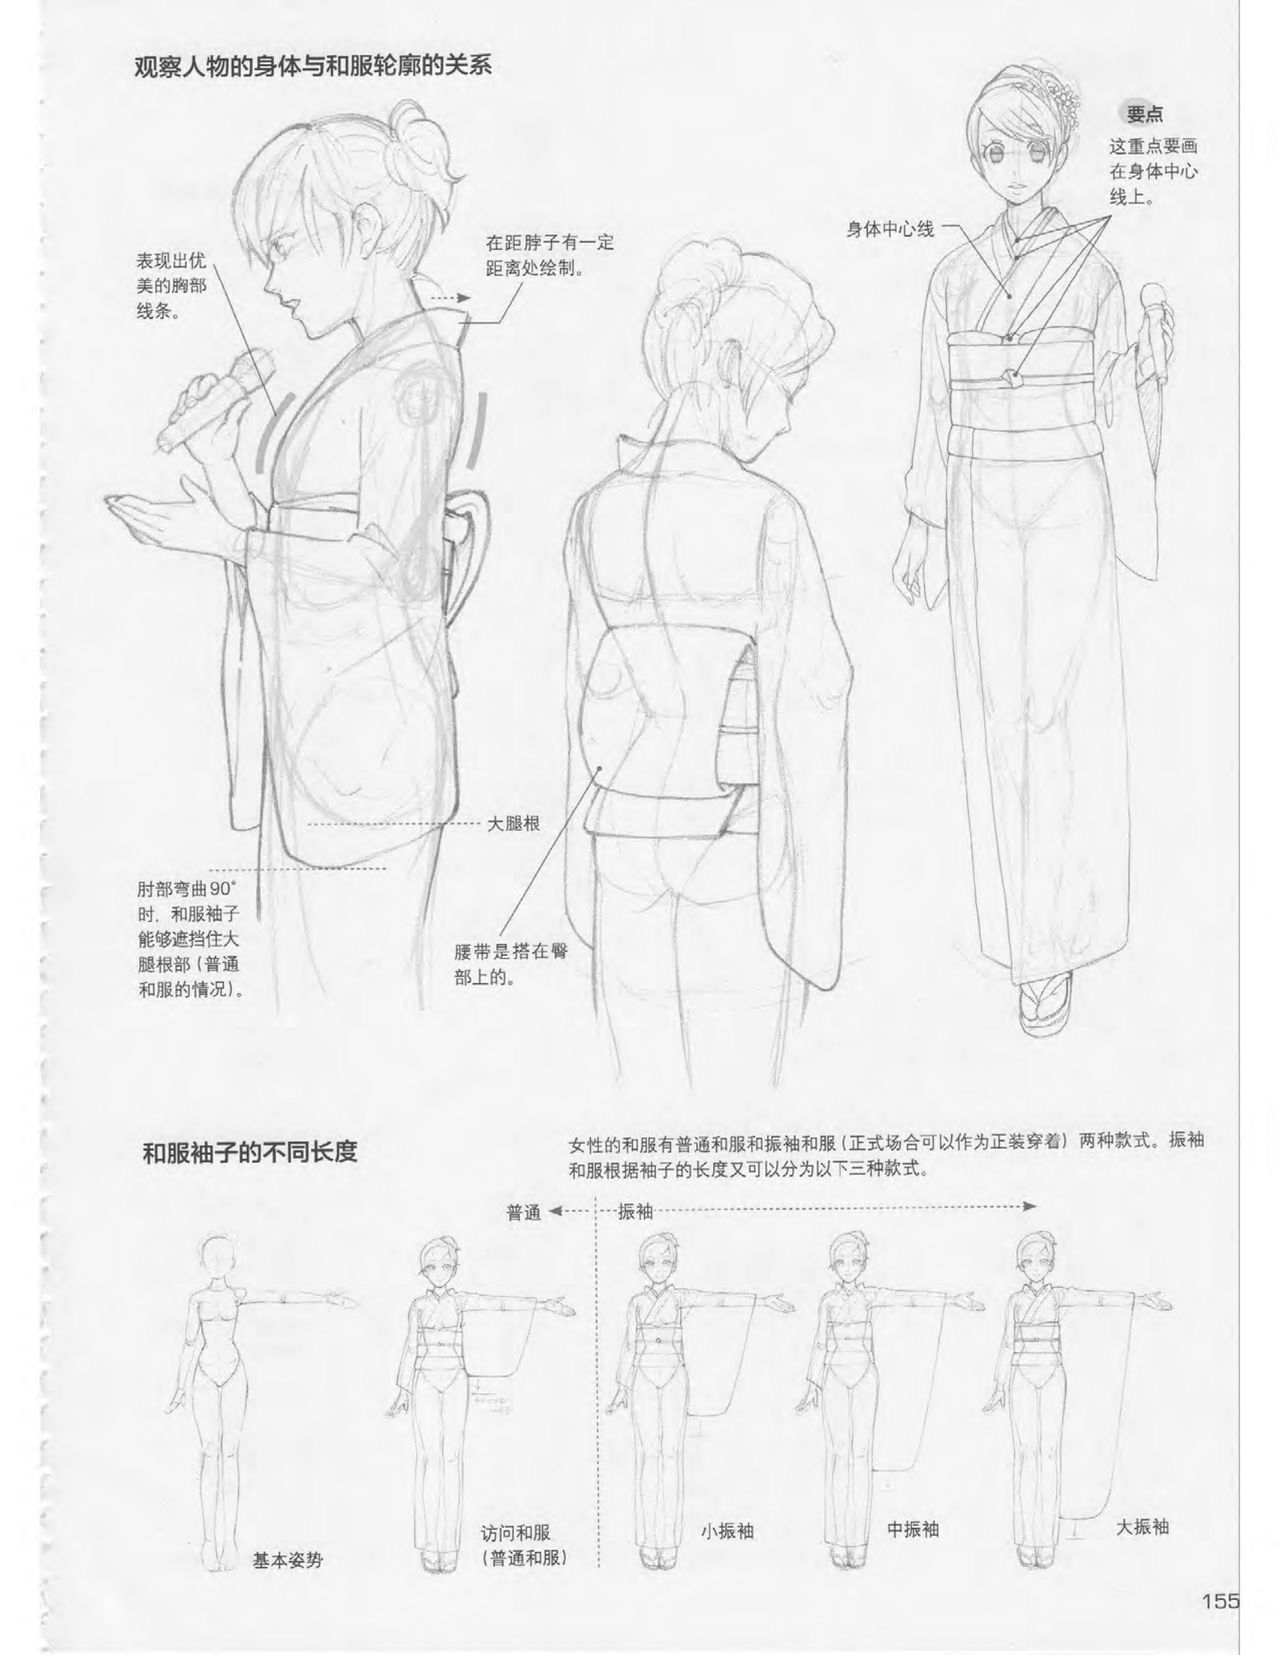 Japanese Manga Master Lecture 3: Lin Akira and Kakumaru Maru Talk About Glamorous Character Modeling 154